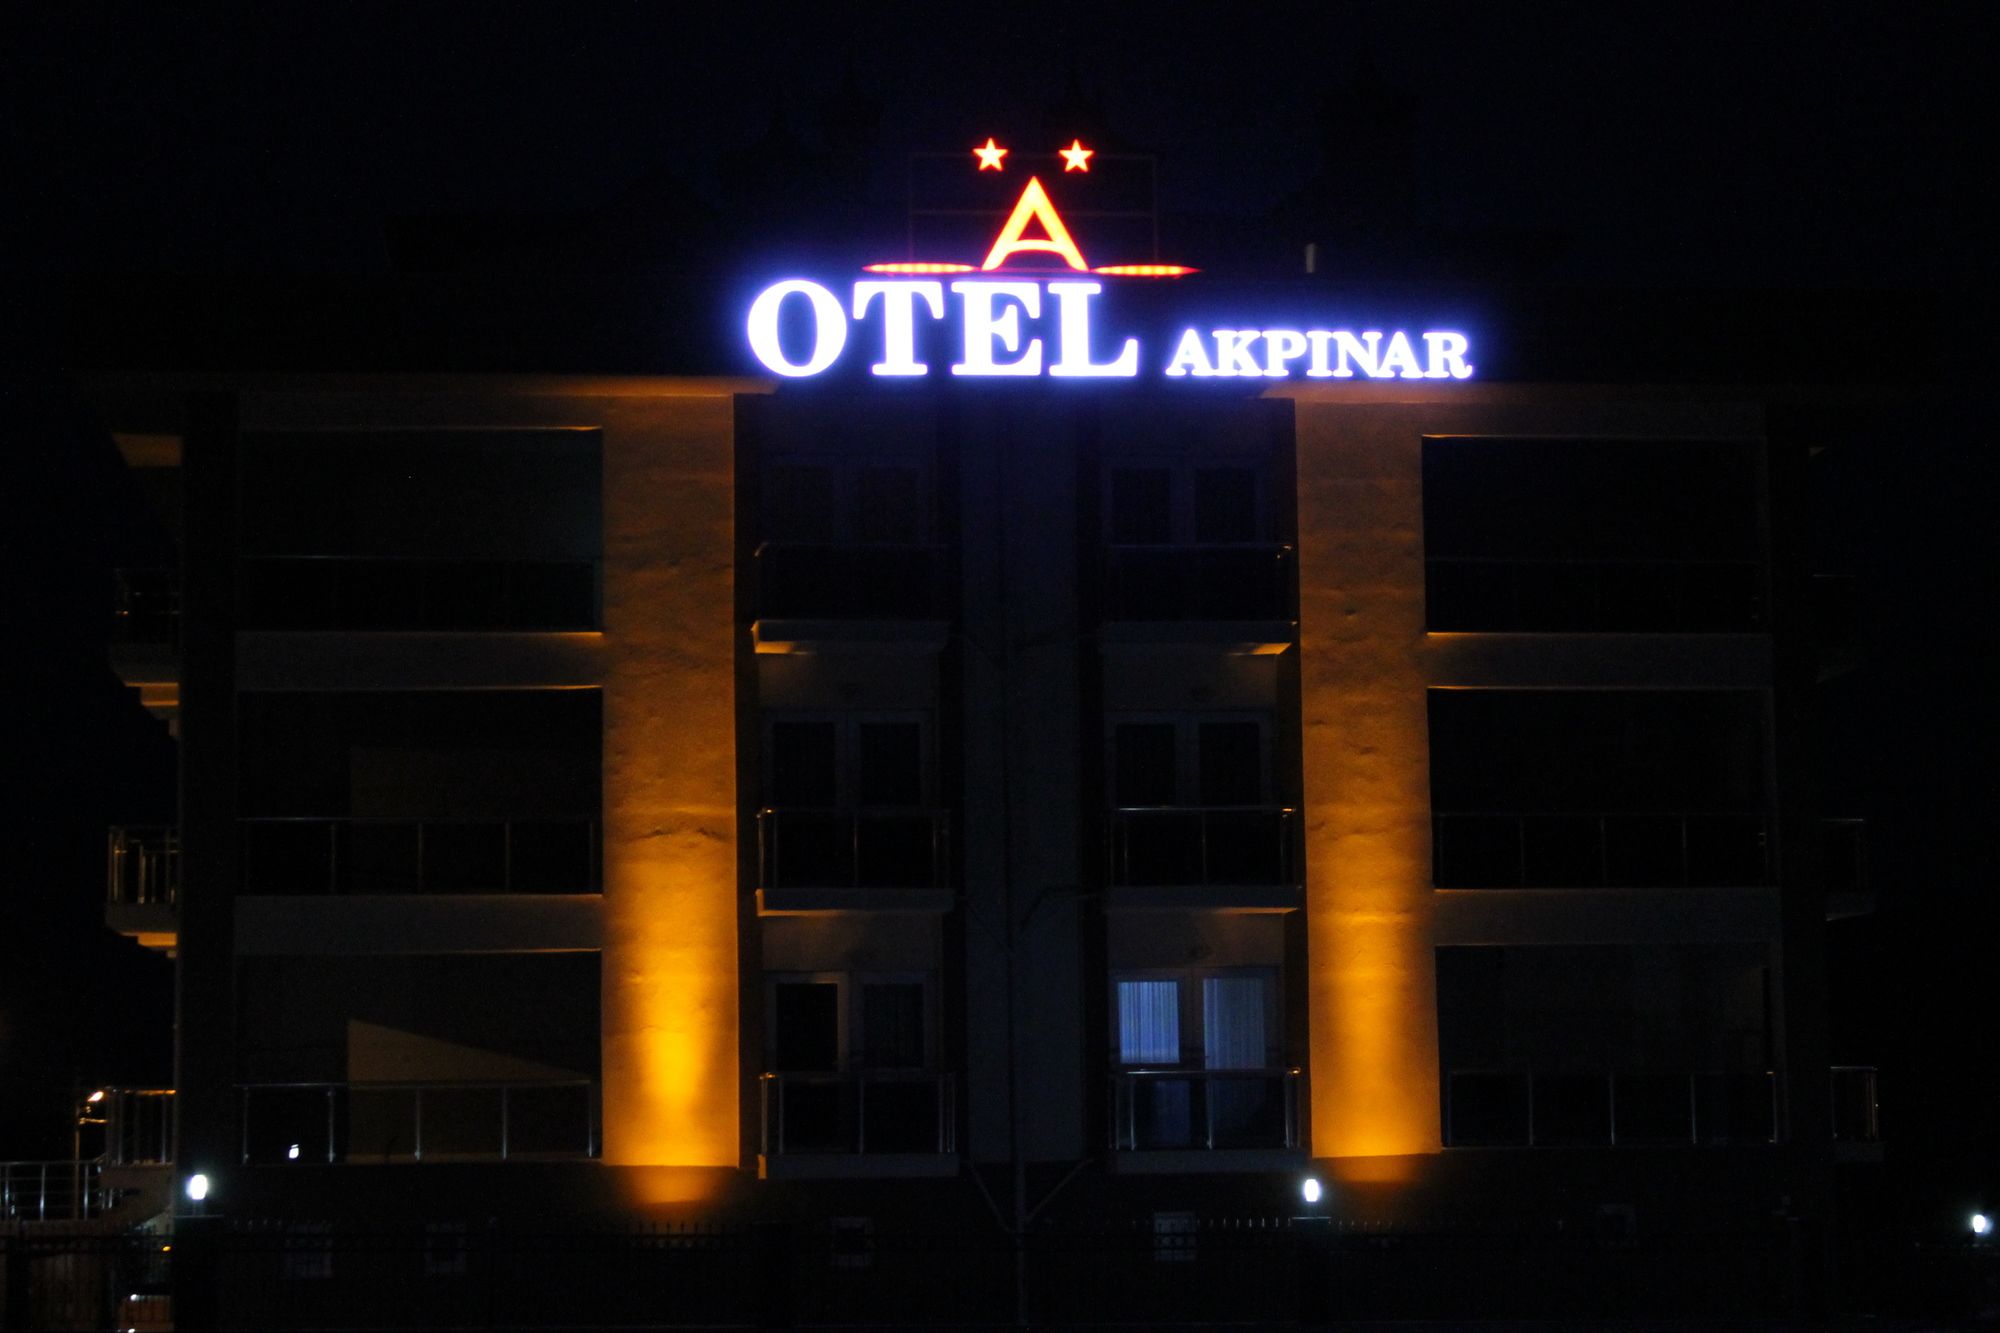 Akpinar Otel (Akpinar Hotel)